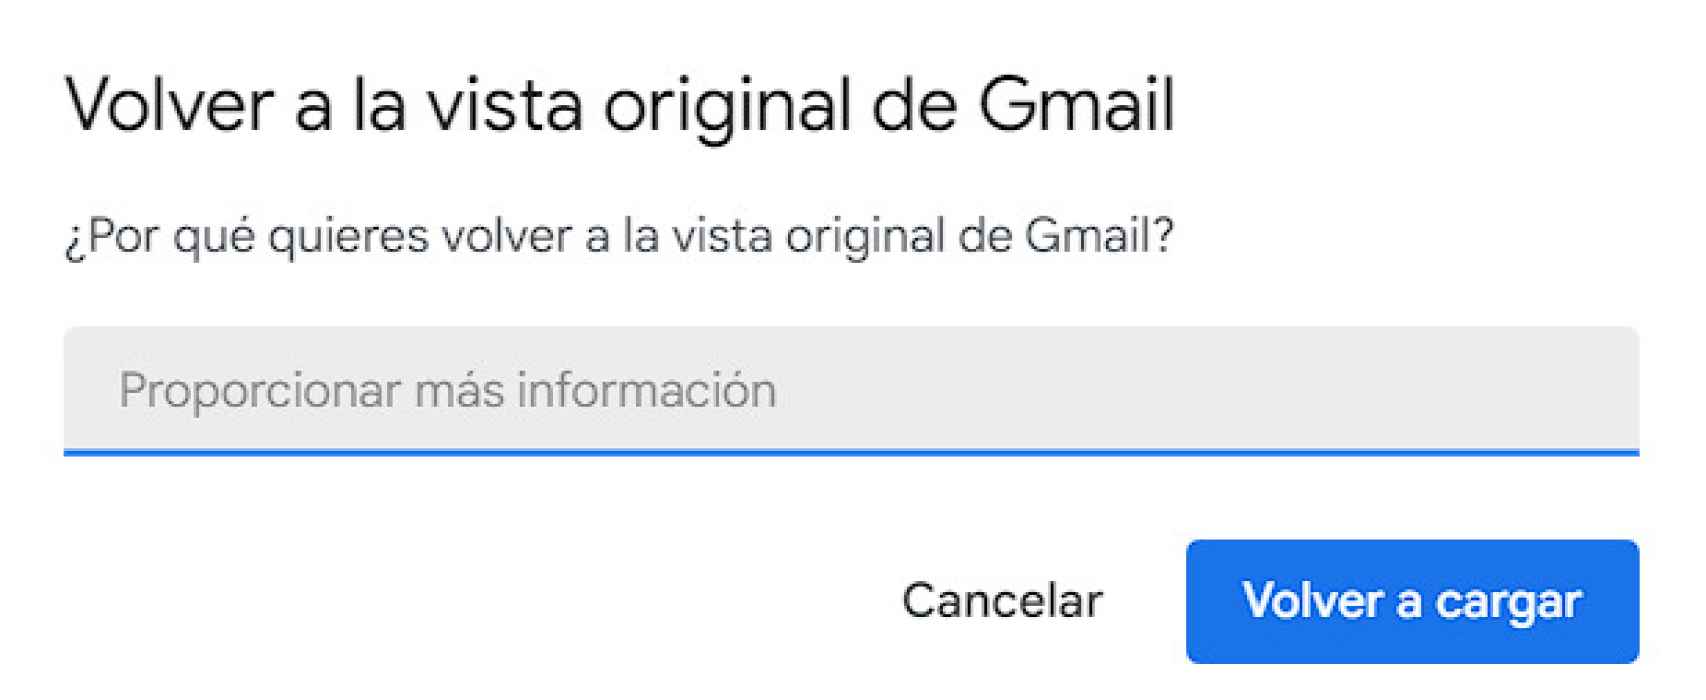 Volver a la vista original de Gmail